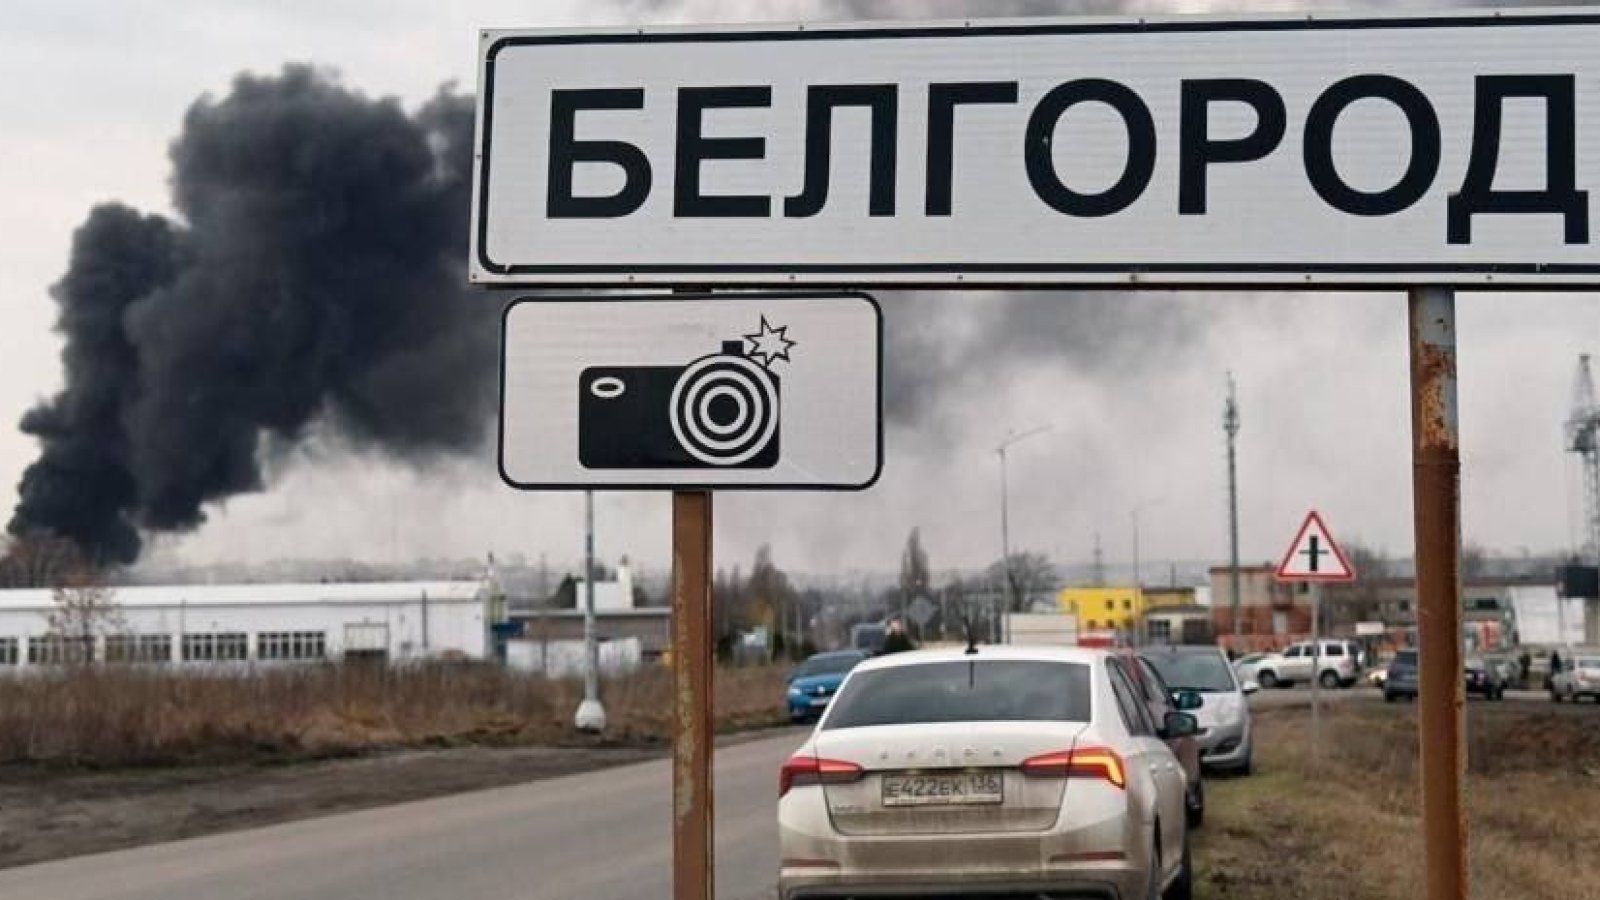 ​Z-пропагандист анонсировал "жест доброй воли" в Белгородской области: "Все к этому идет"